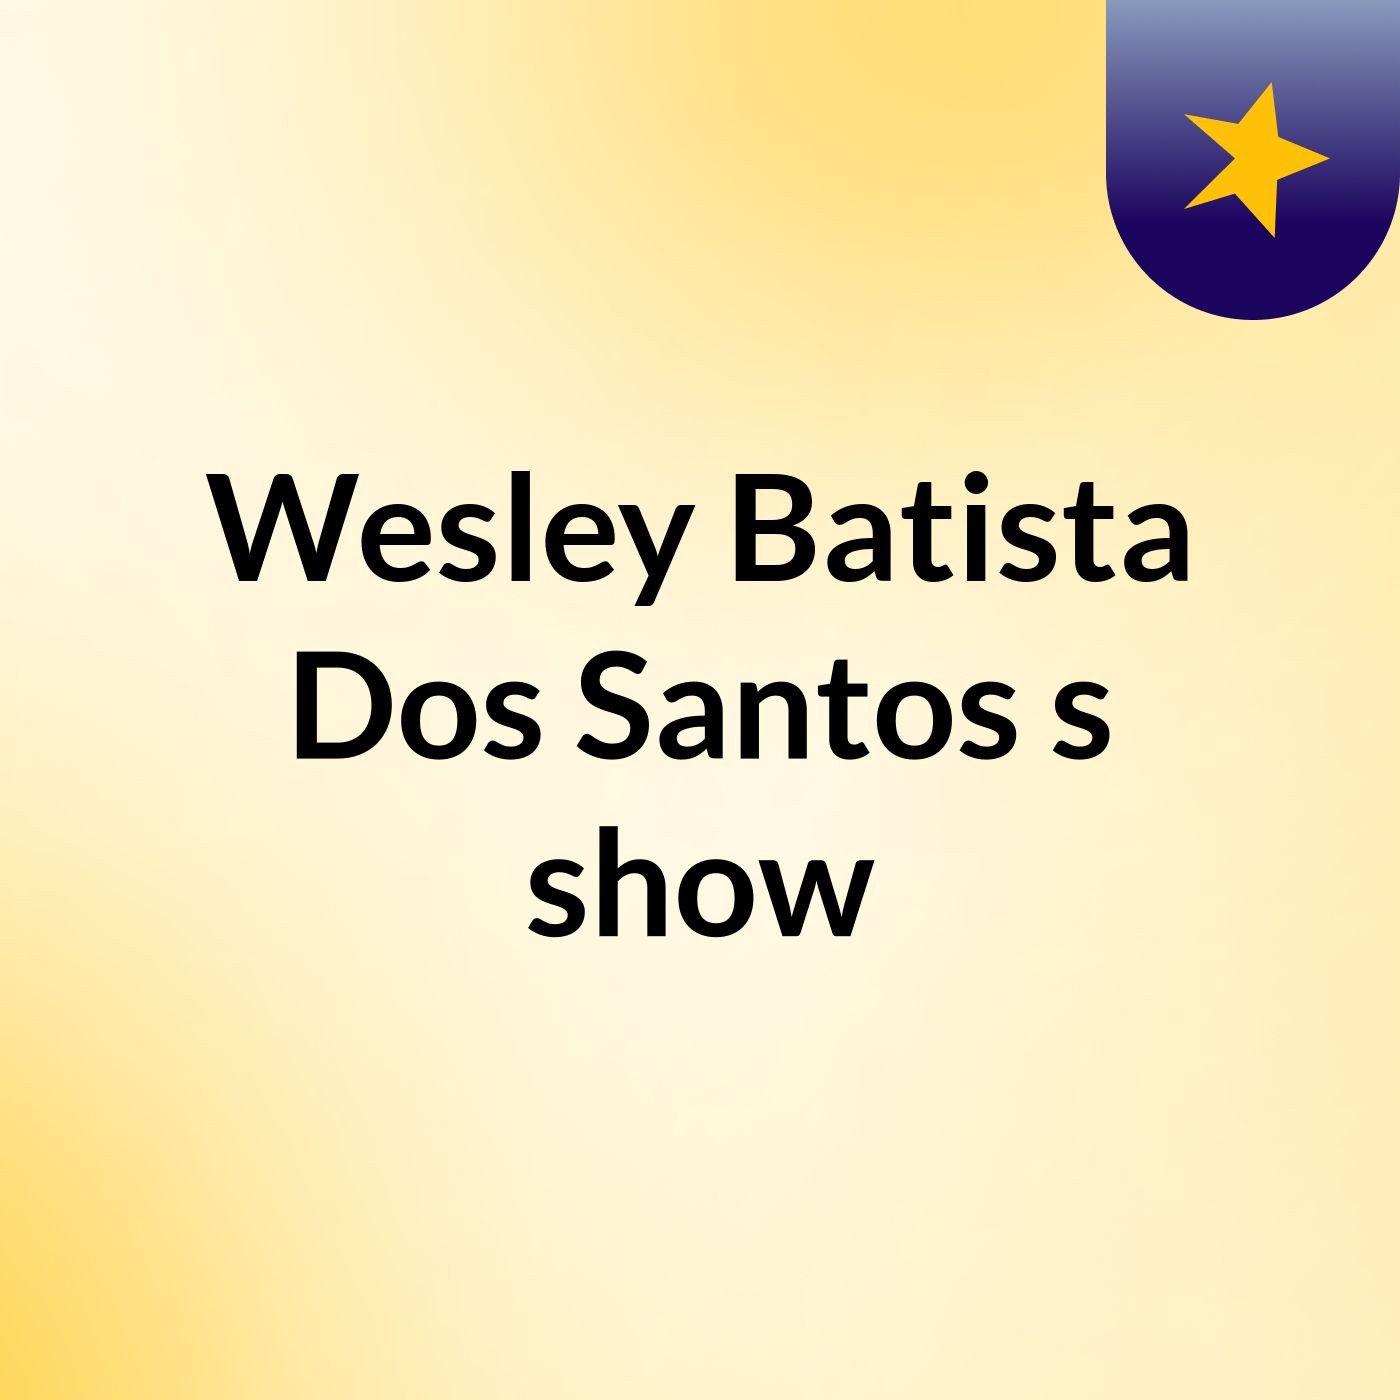 Oração Da Madrugada Com Pastor Wesley Batista Dos Santos's show